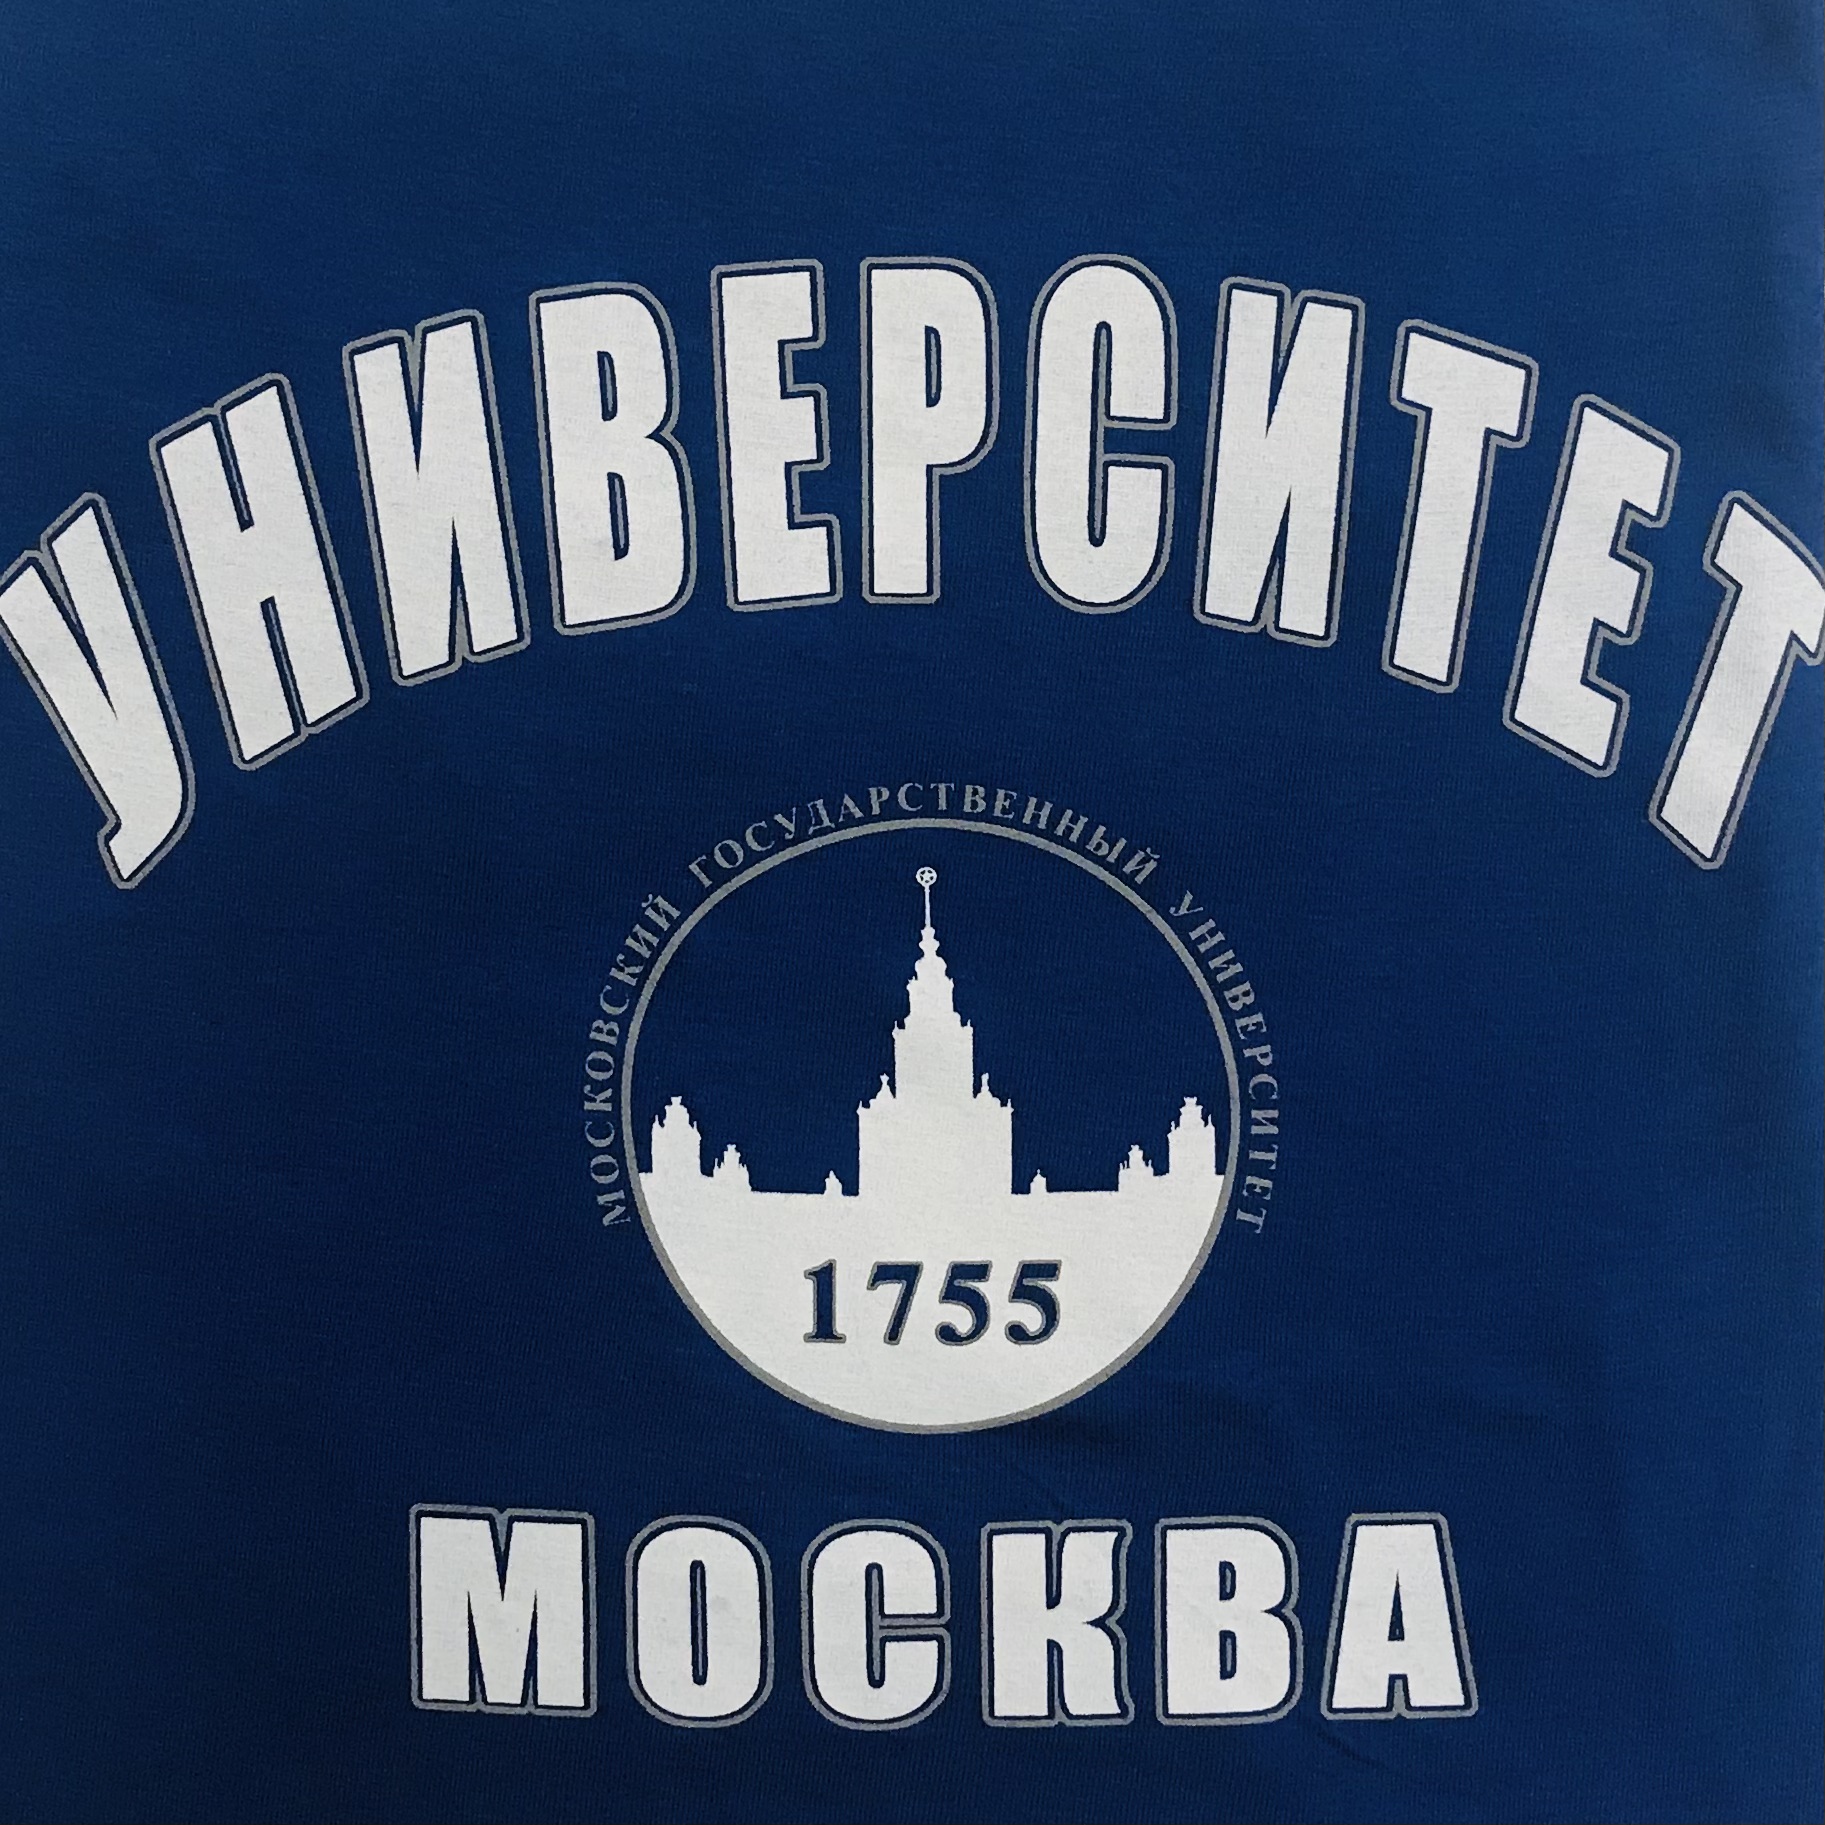 Футболка сувенирная Университет